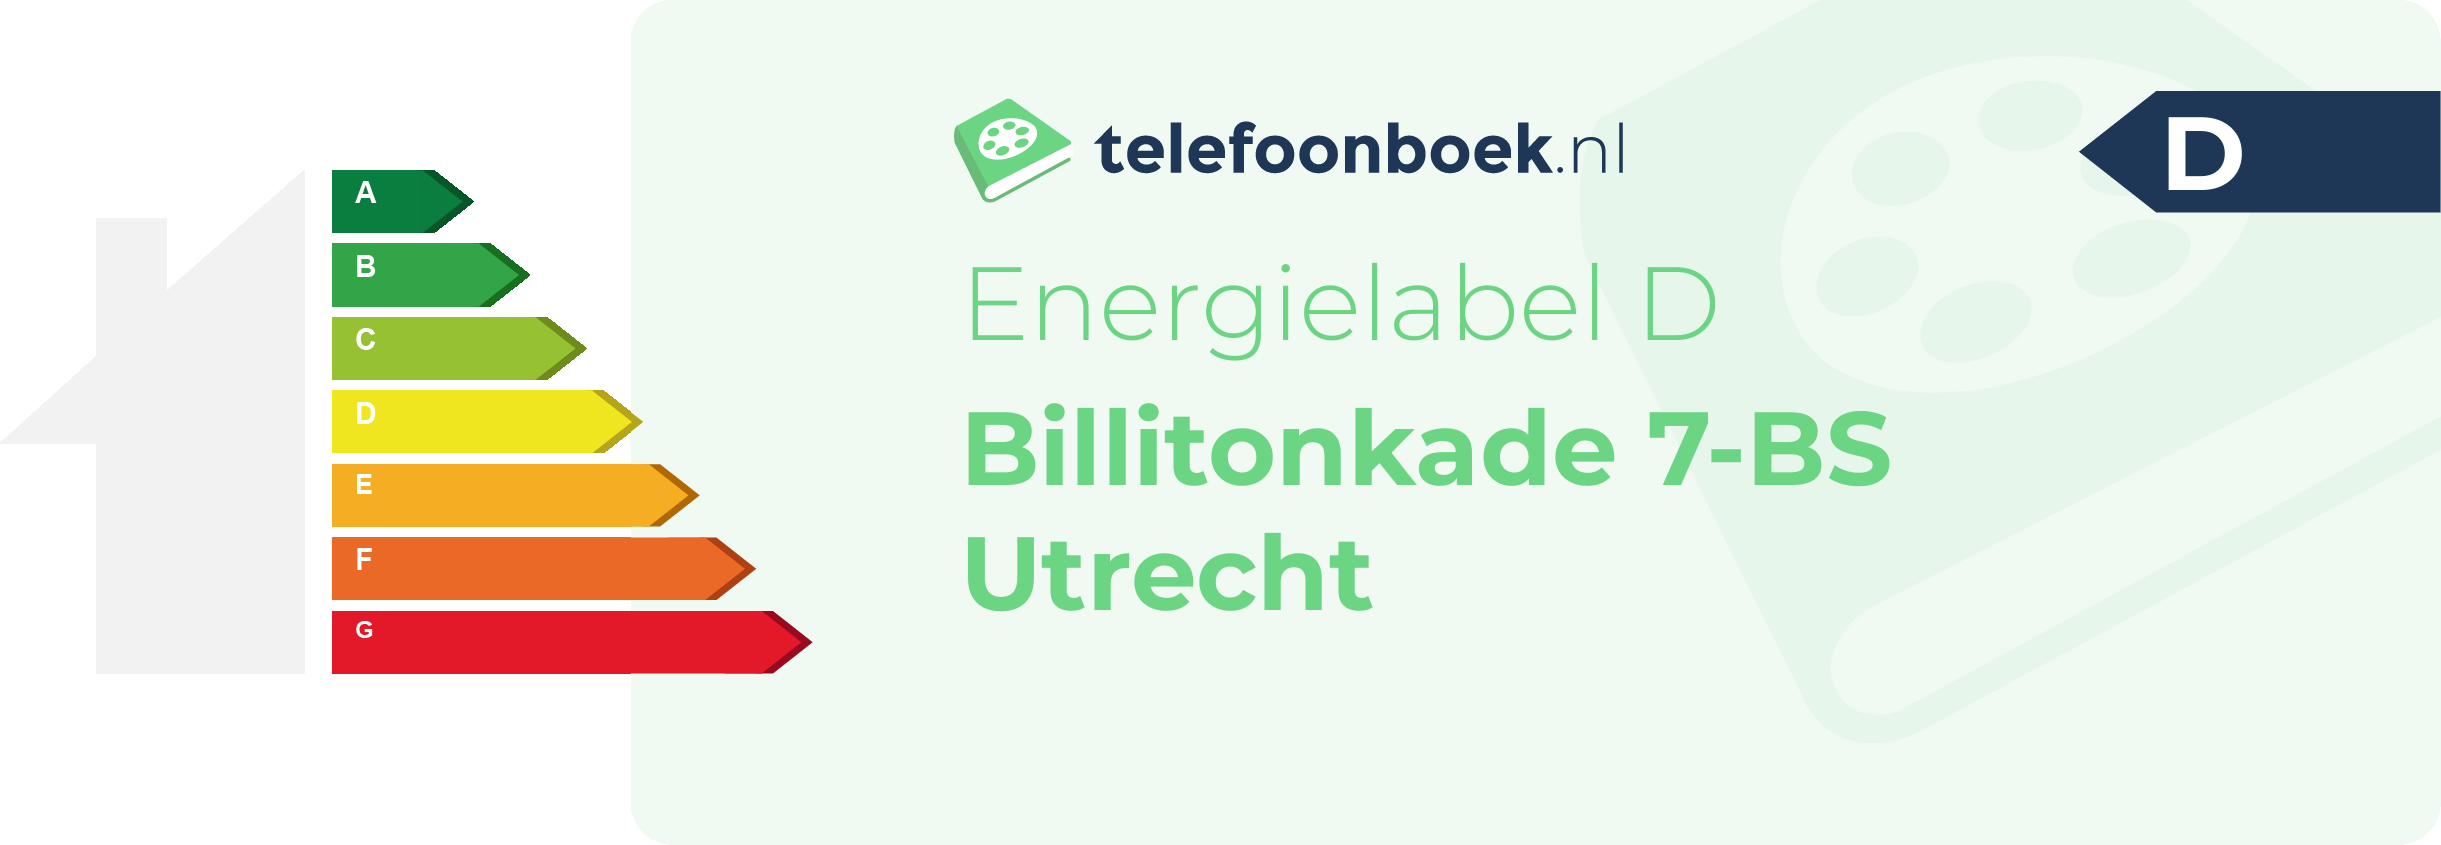 Energielabel Billitonkade 7-BS Utrecht